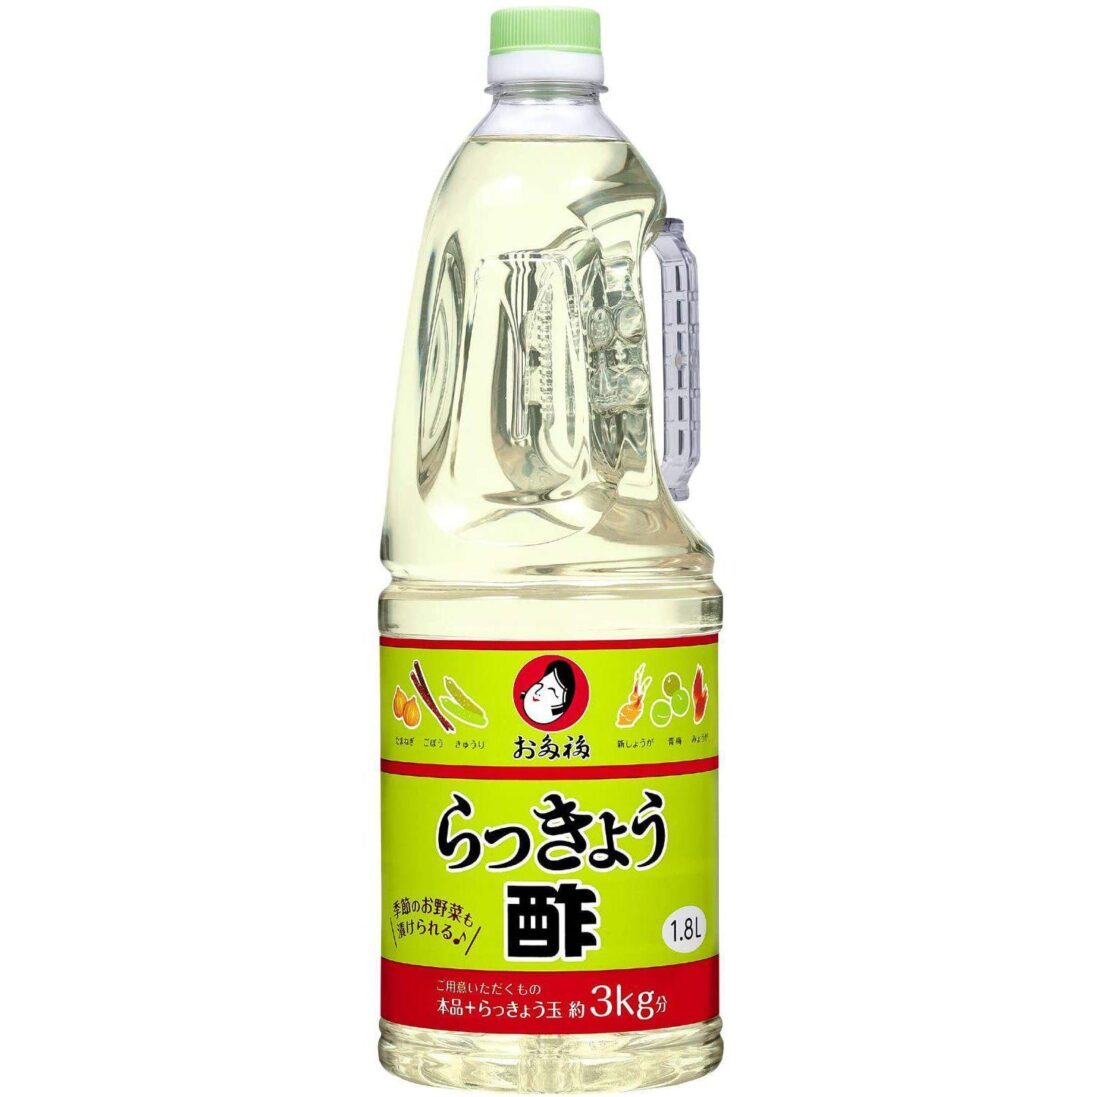 Otafuku-Rakkyo-Shallots-Vinegar-1_8L-Japanese-Taste_2048x.jpg